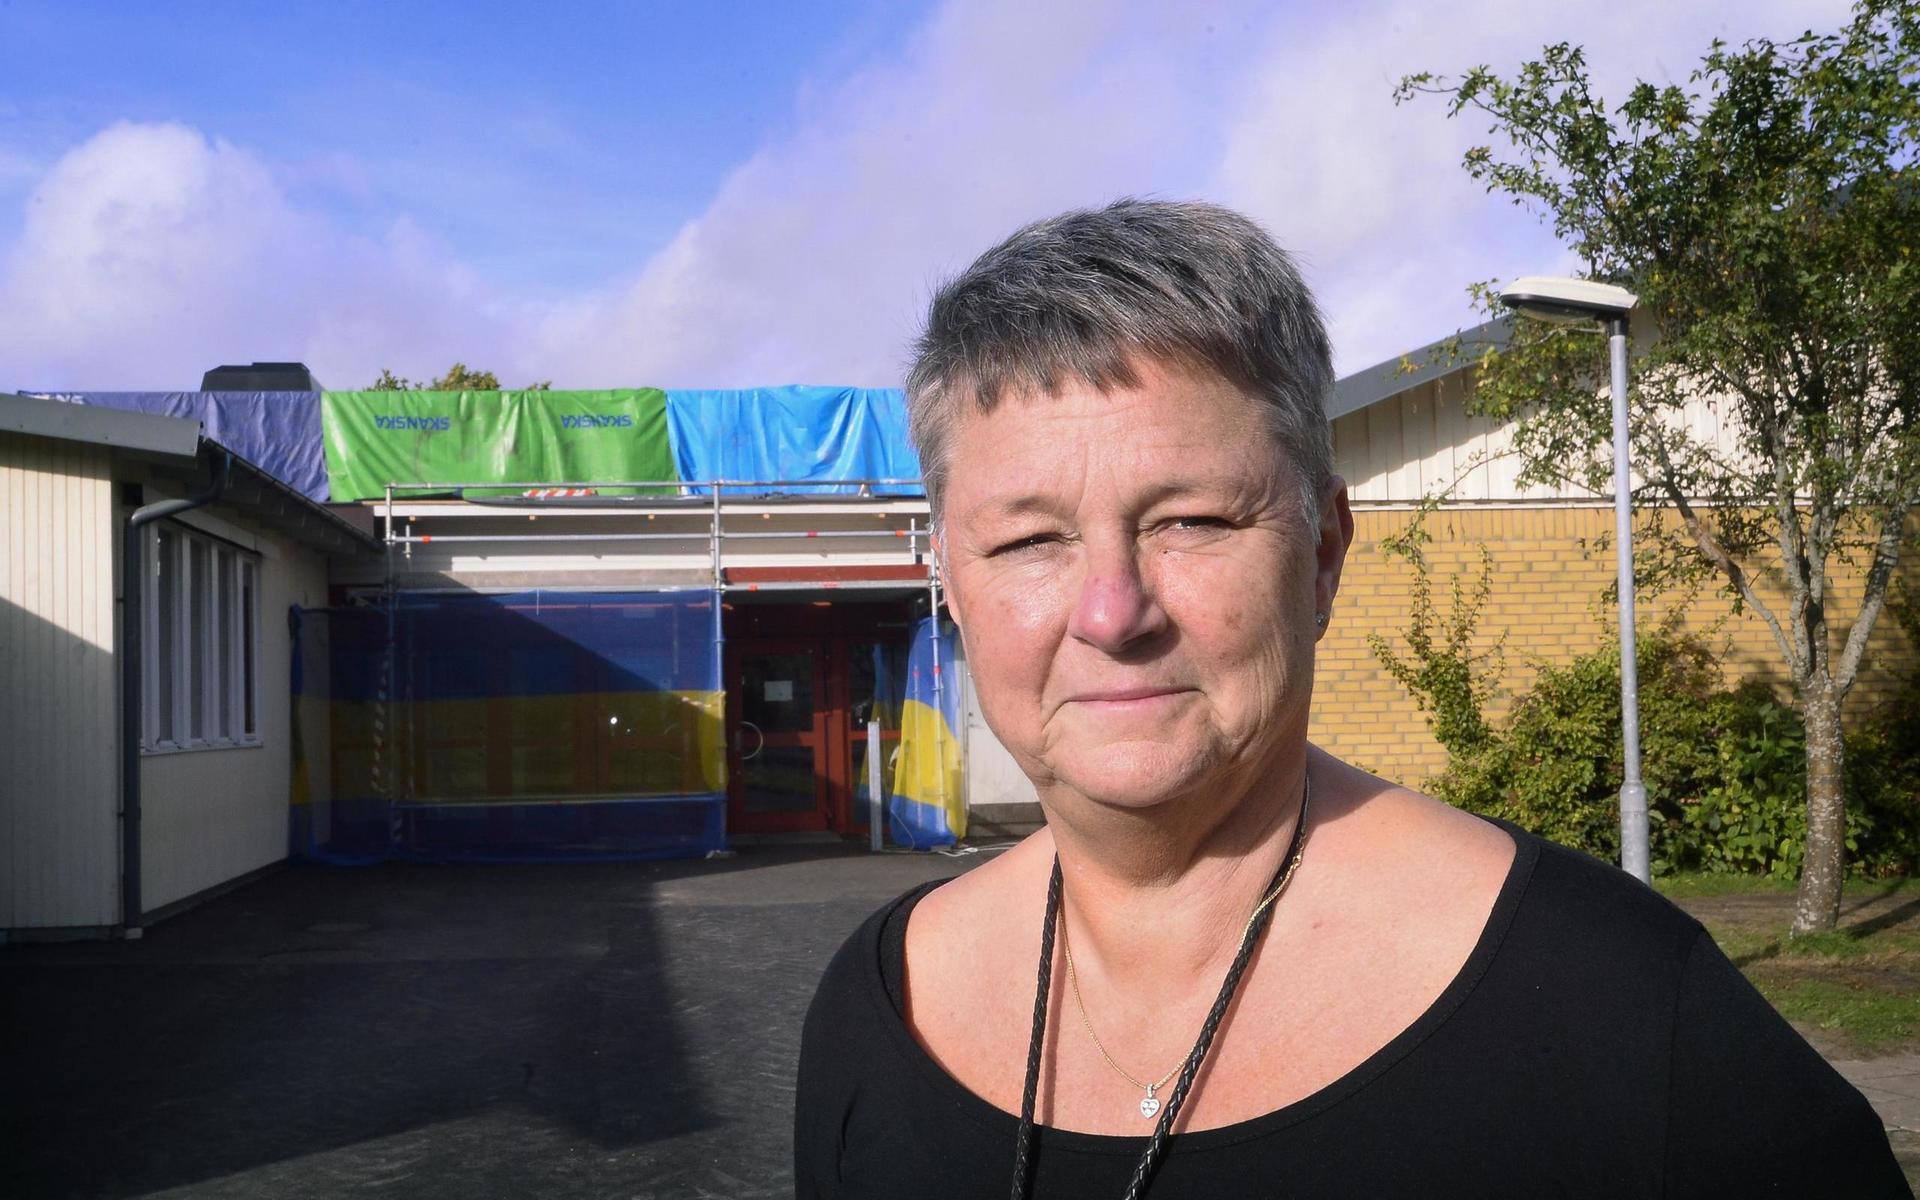 Birgitta Therén är rektor på Bosgårdsskolan. Hon säger att skolan avrått från resan men att vårdnadshavarna tagit beslutet om att genomföra den ändå.